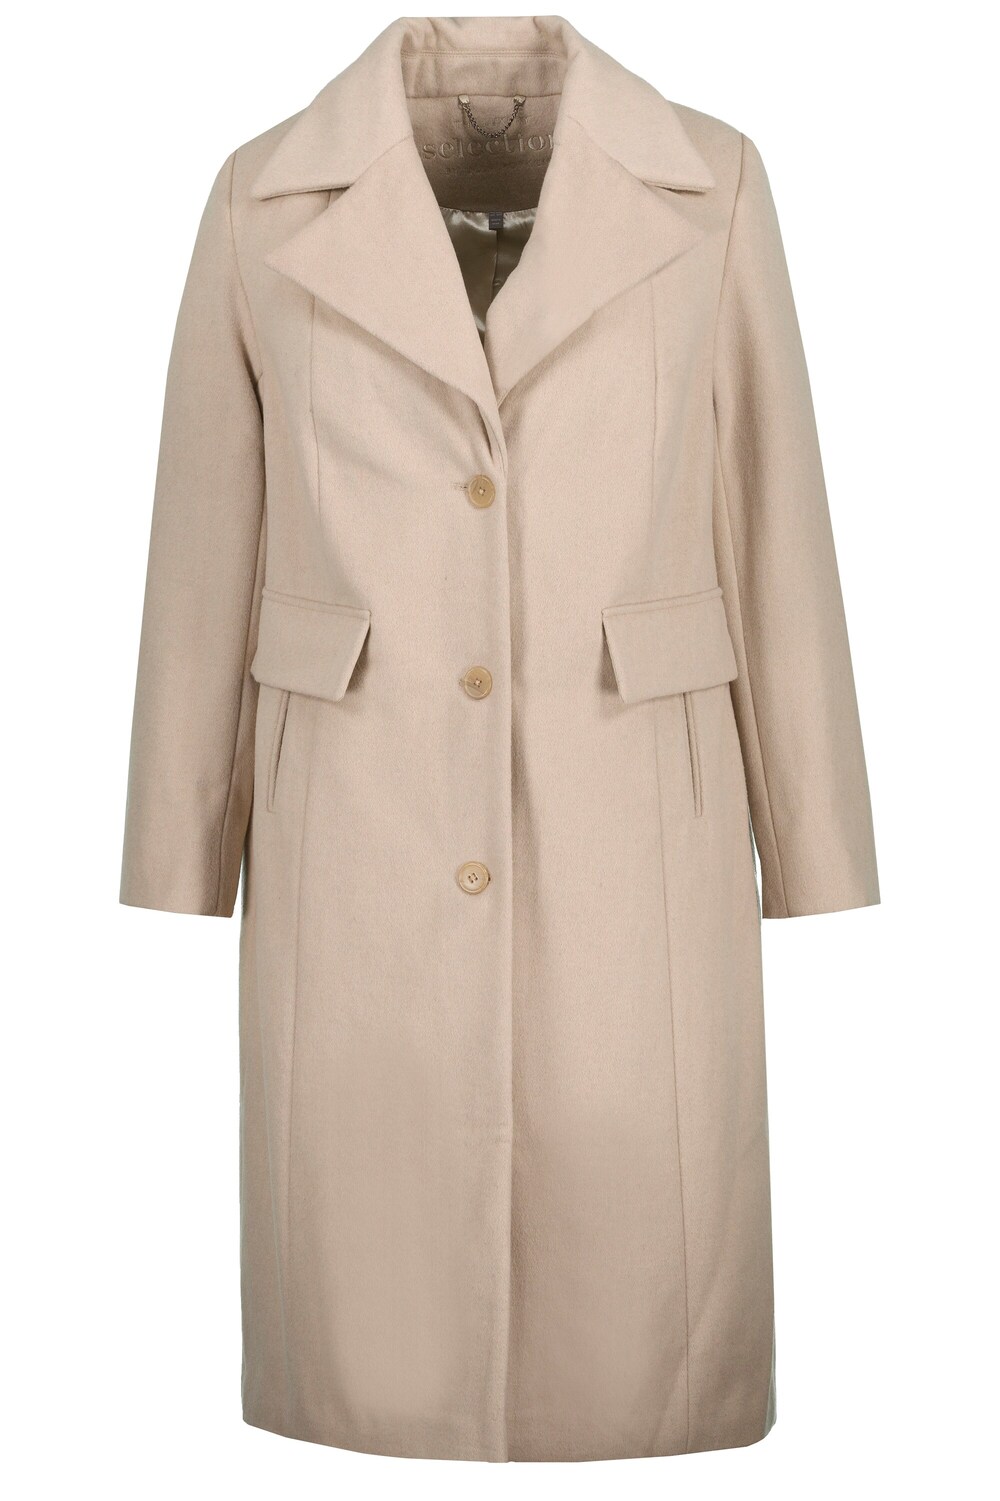 Межсезонное пальто Ulla Popken, обнаженная межсезонное пальто ulla popken пестрый коричневый